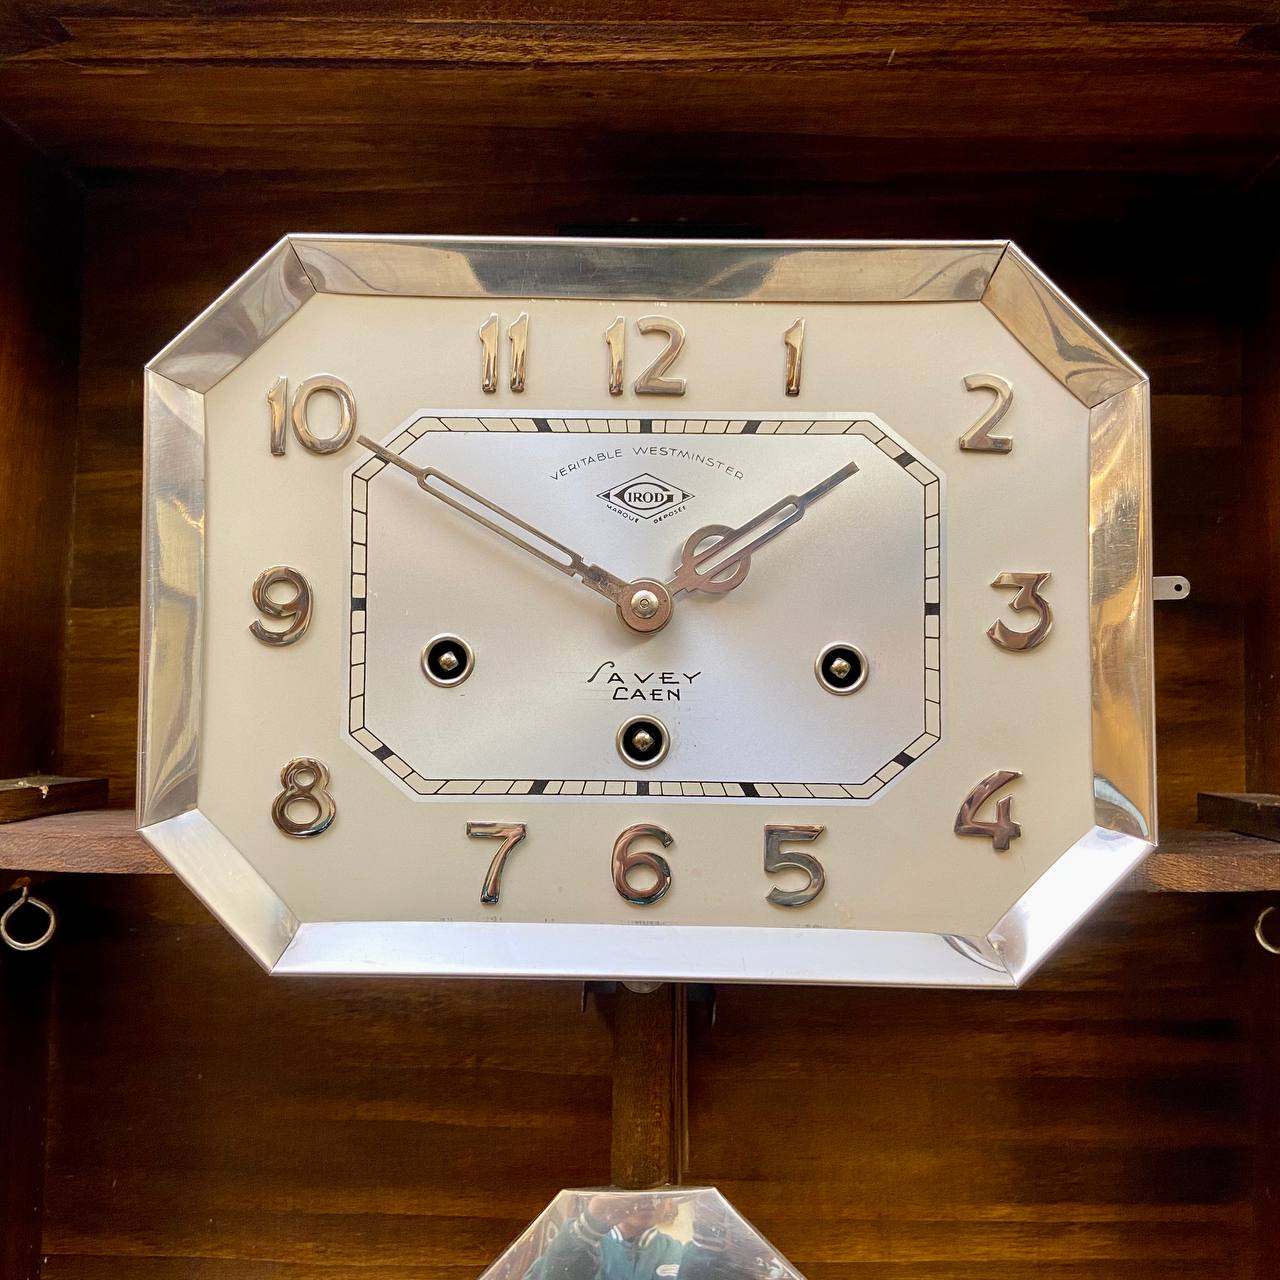 Đồng hồ Girod thùng bè mặt số nổi đẹp sang trọng